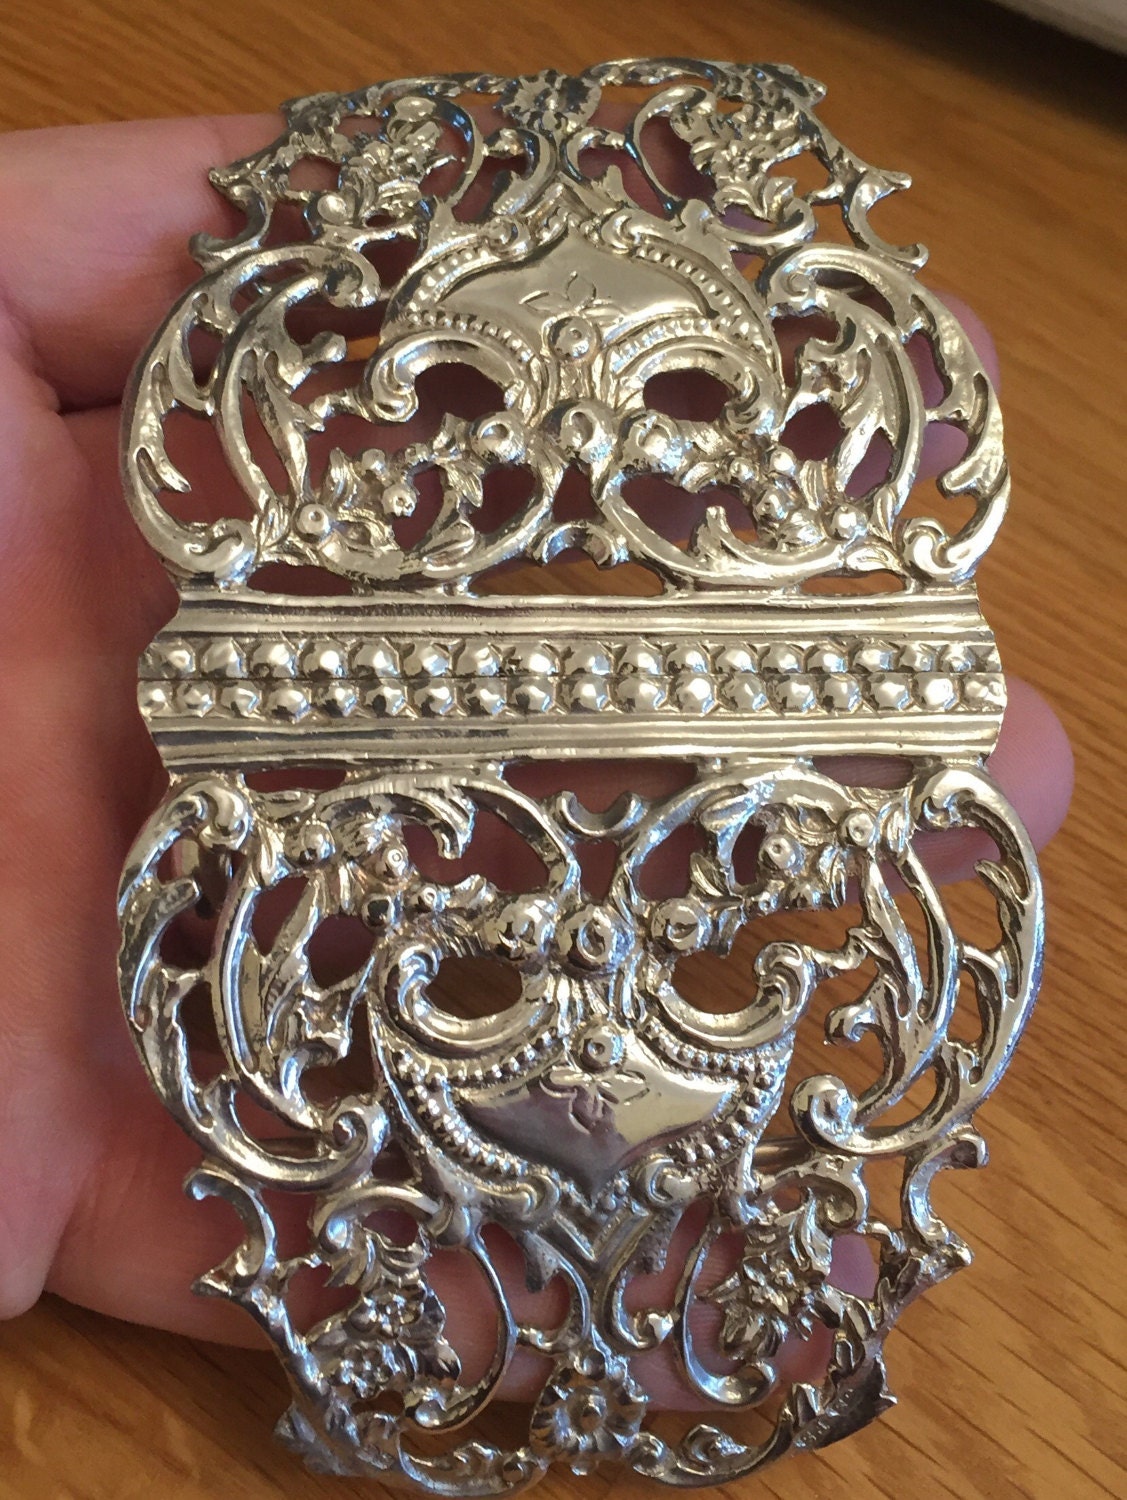 SALE** Superb antique Sterling silver belt buckle - Chester 1893